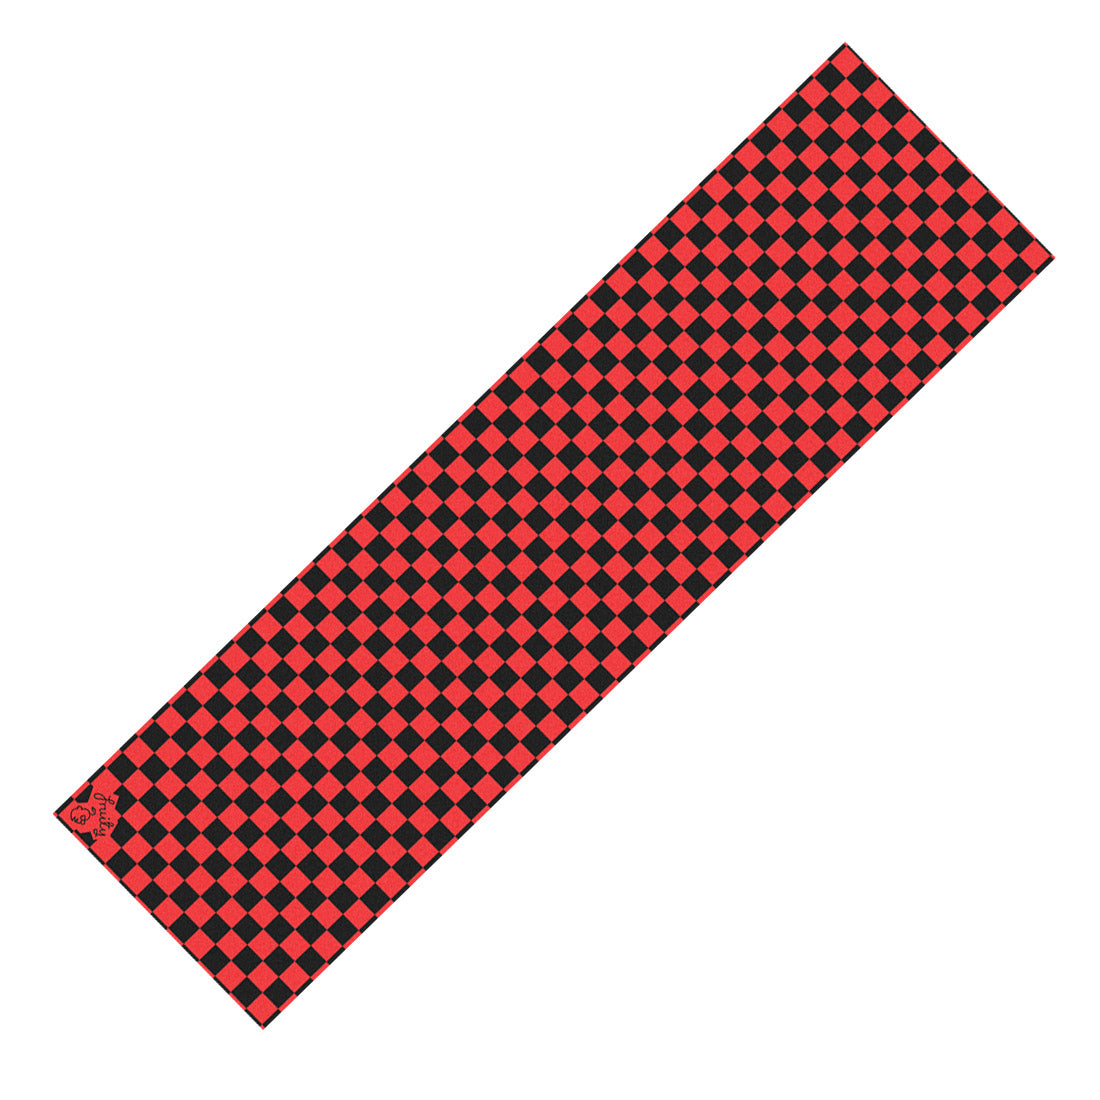 Fruity Griptape - Checkered Black Red Check Griptape